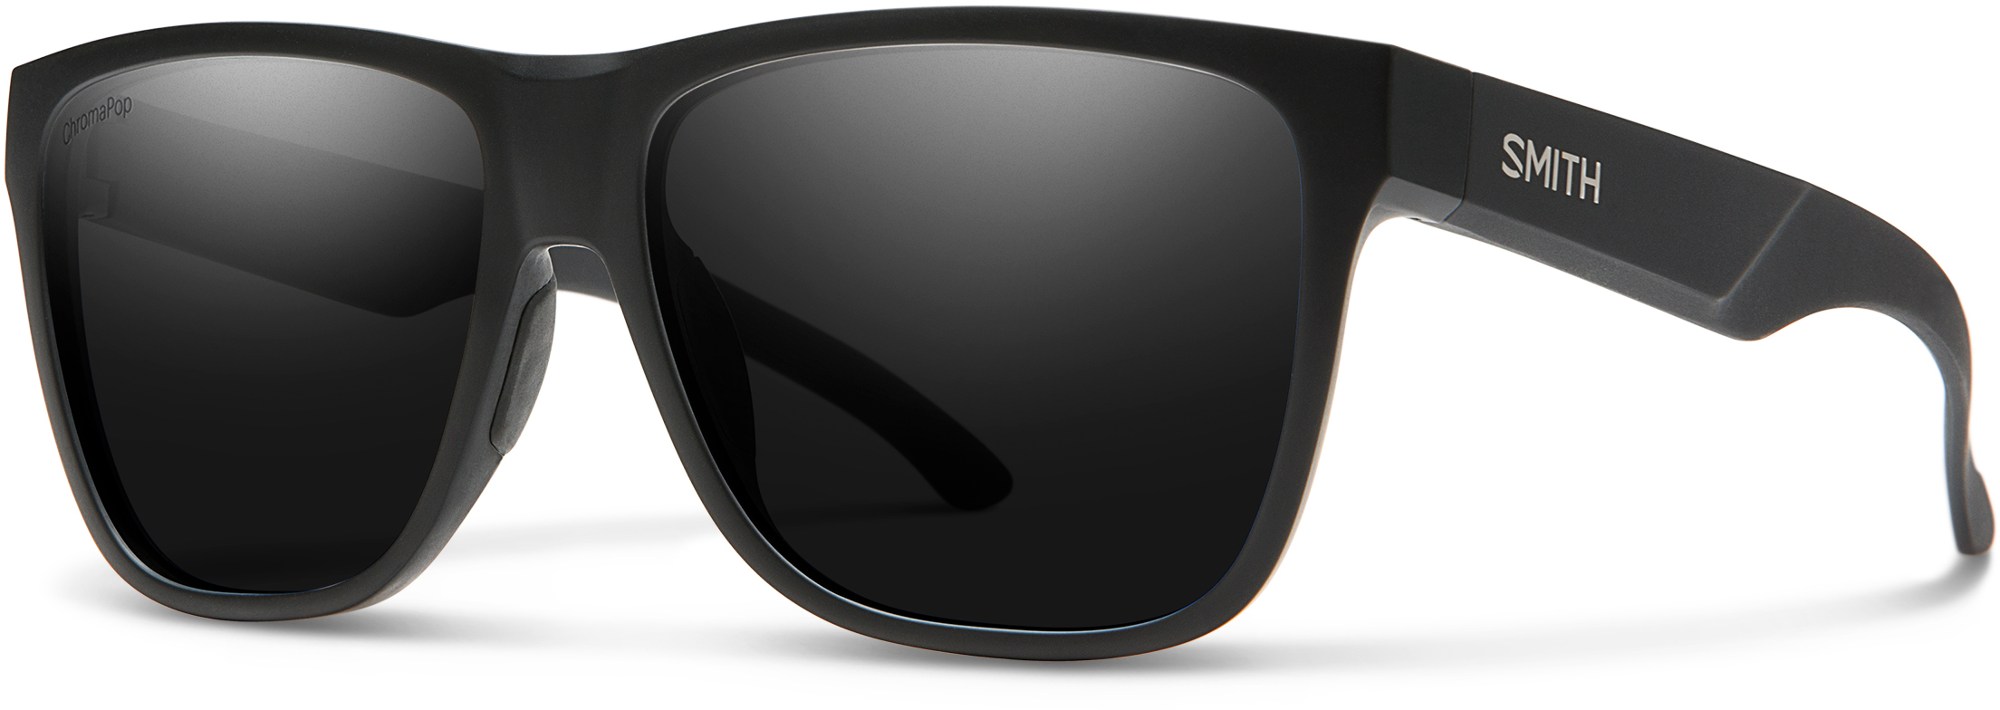 Поляризованные солнцезащитные очки Lowdown XL 2 ChromaPop Smith, черный цена и фото